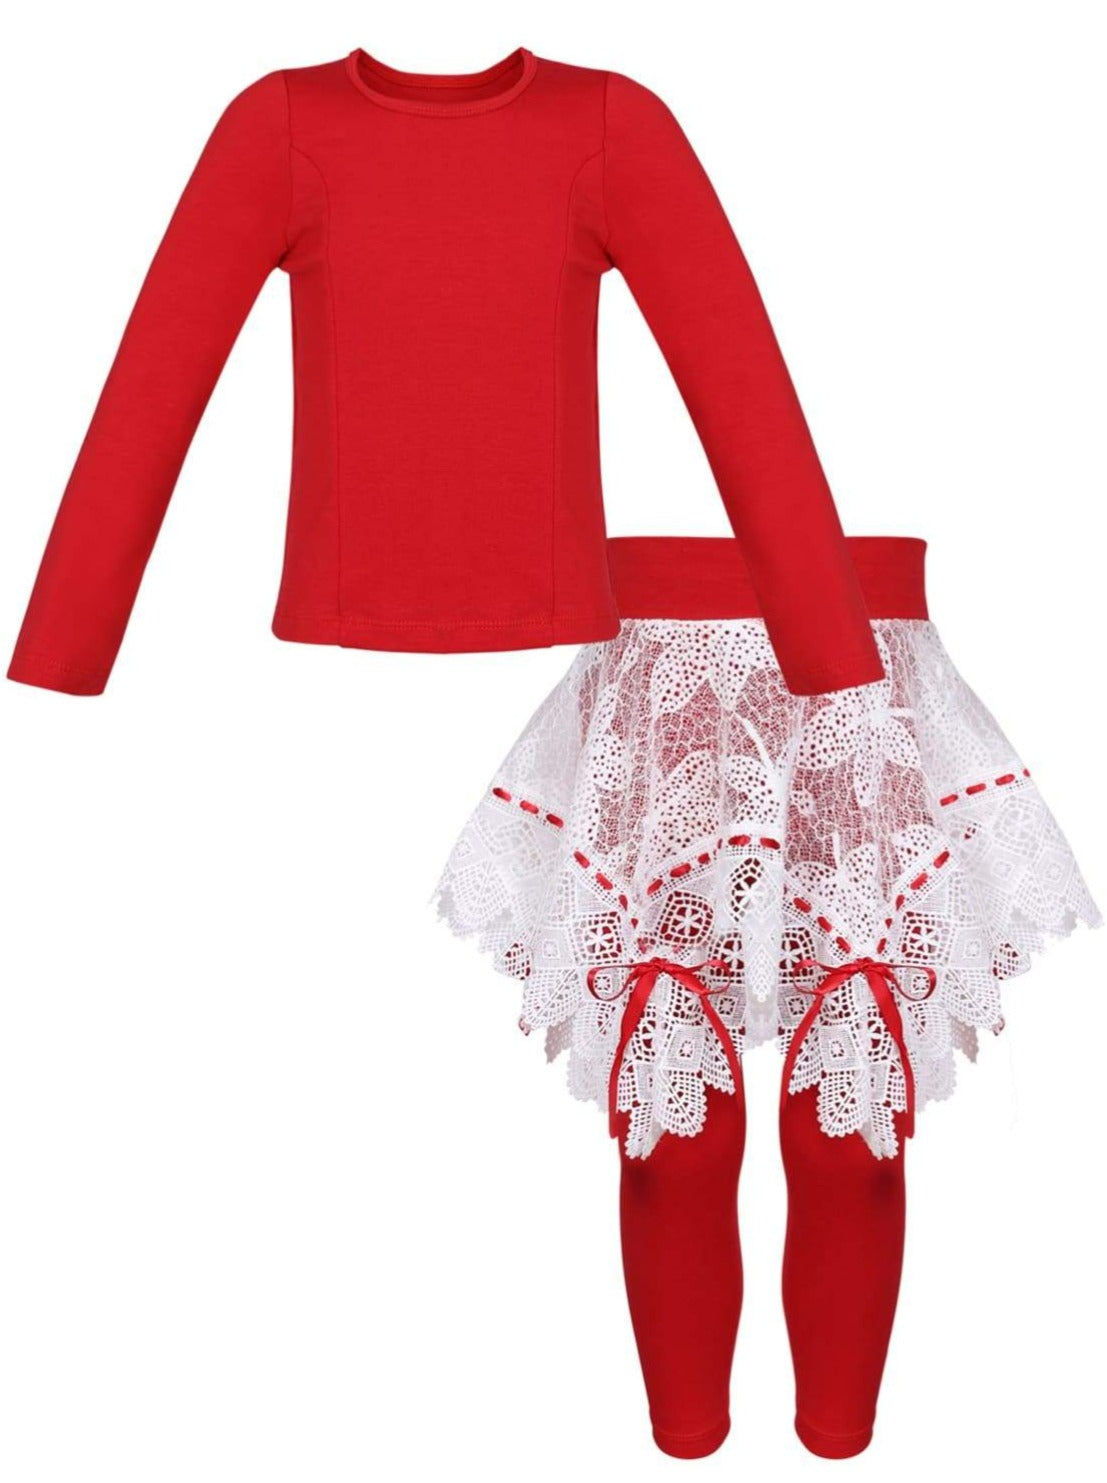 Girls Long Sleeve Tunic Crochet Skirt & Leggings Set - Red / 2T/3T - Girls Spring Dressy Set